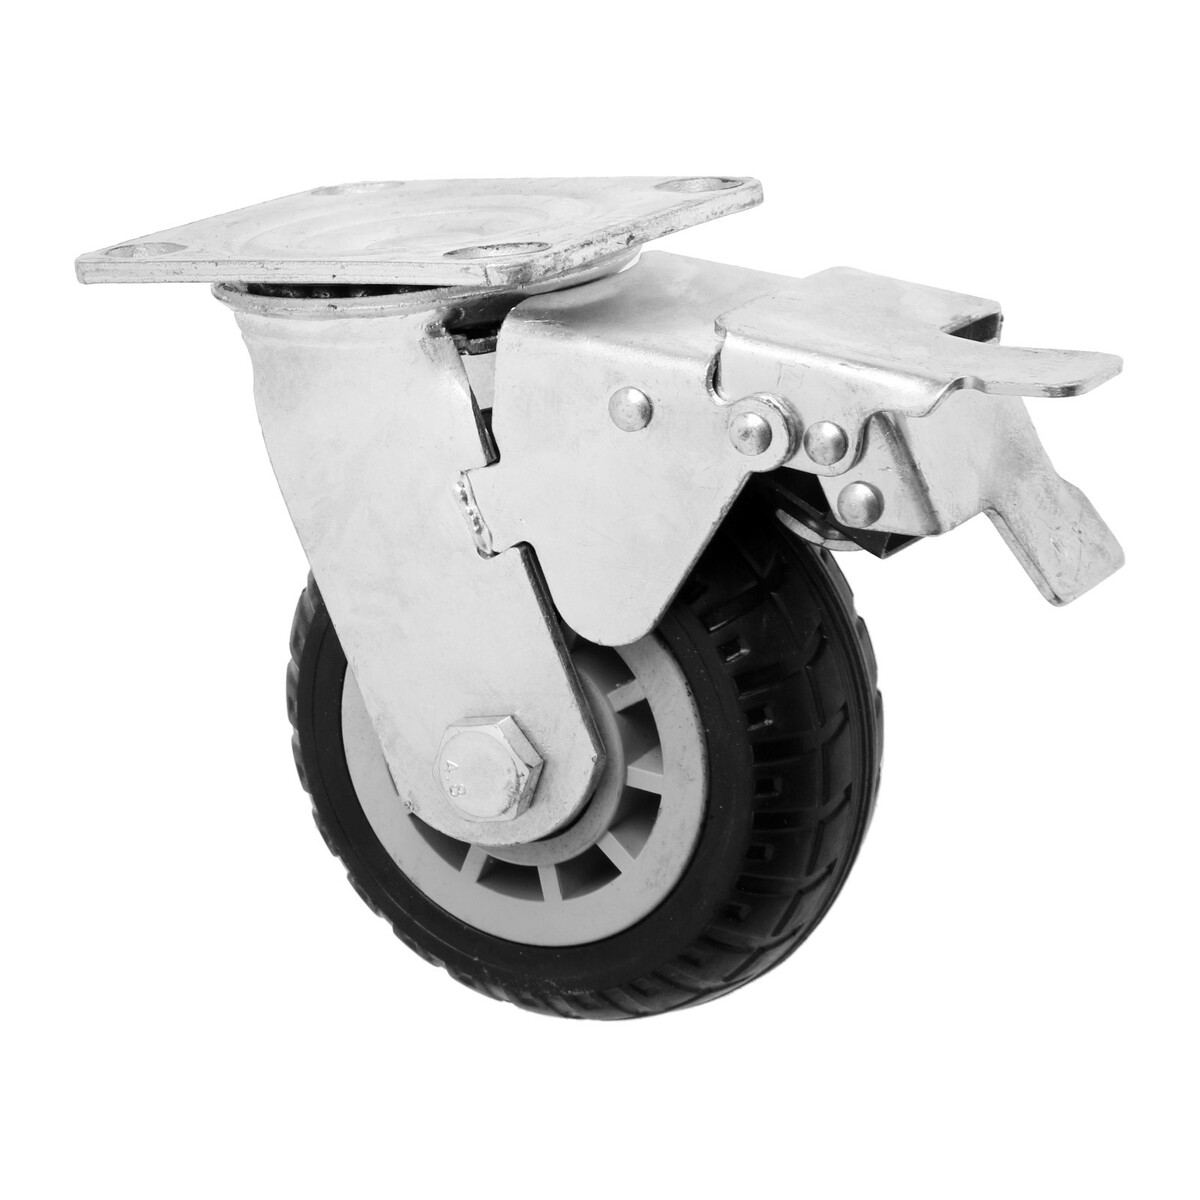 Колесо для транспортных тележек поворотное, d=125, на площадке, со стопором, покрытие резина 9917 колесо промышленное резина pr 100х30х126 мм с кронштейном мави про